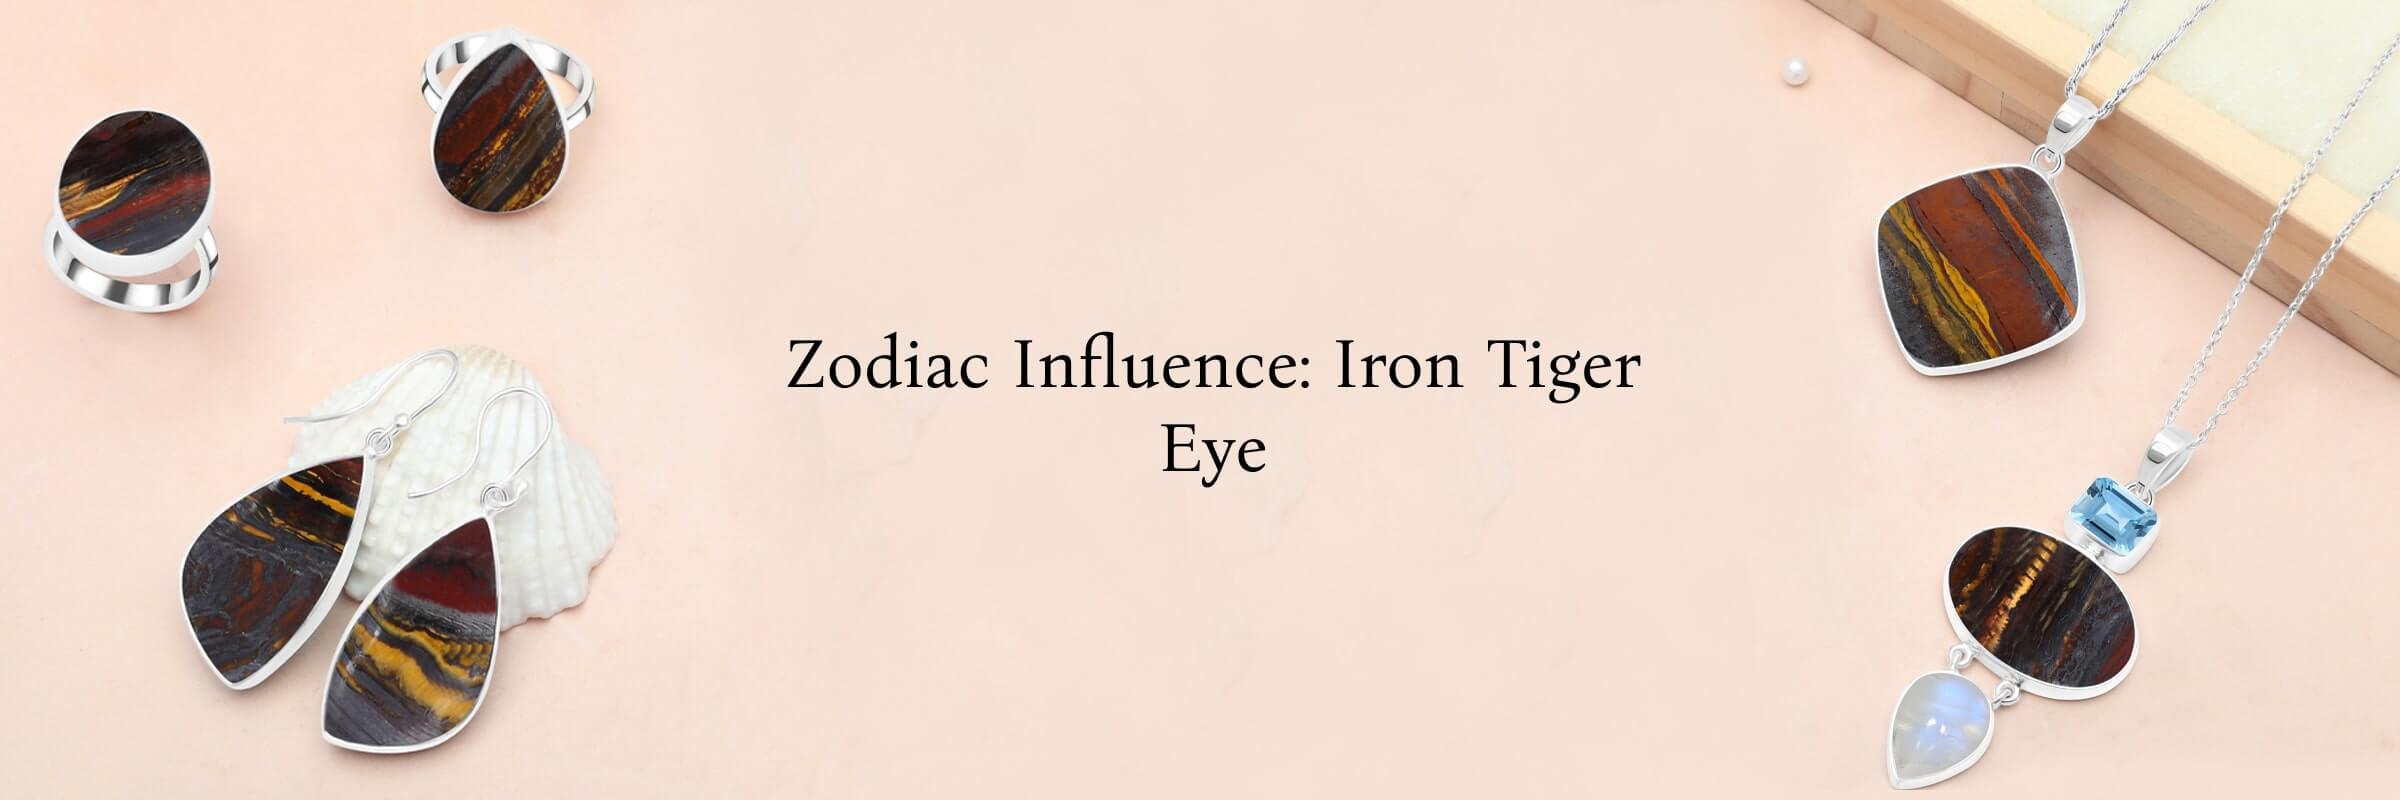 Zodiac Sign of Iron Tiger Eye Stone